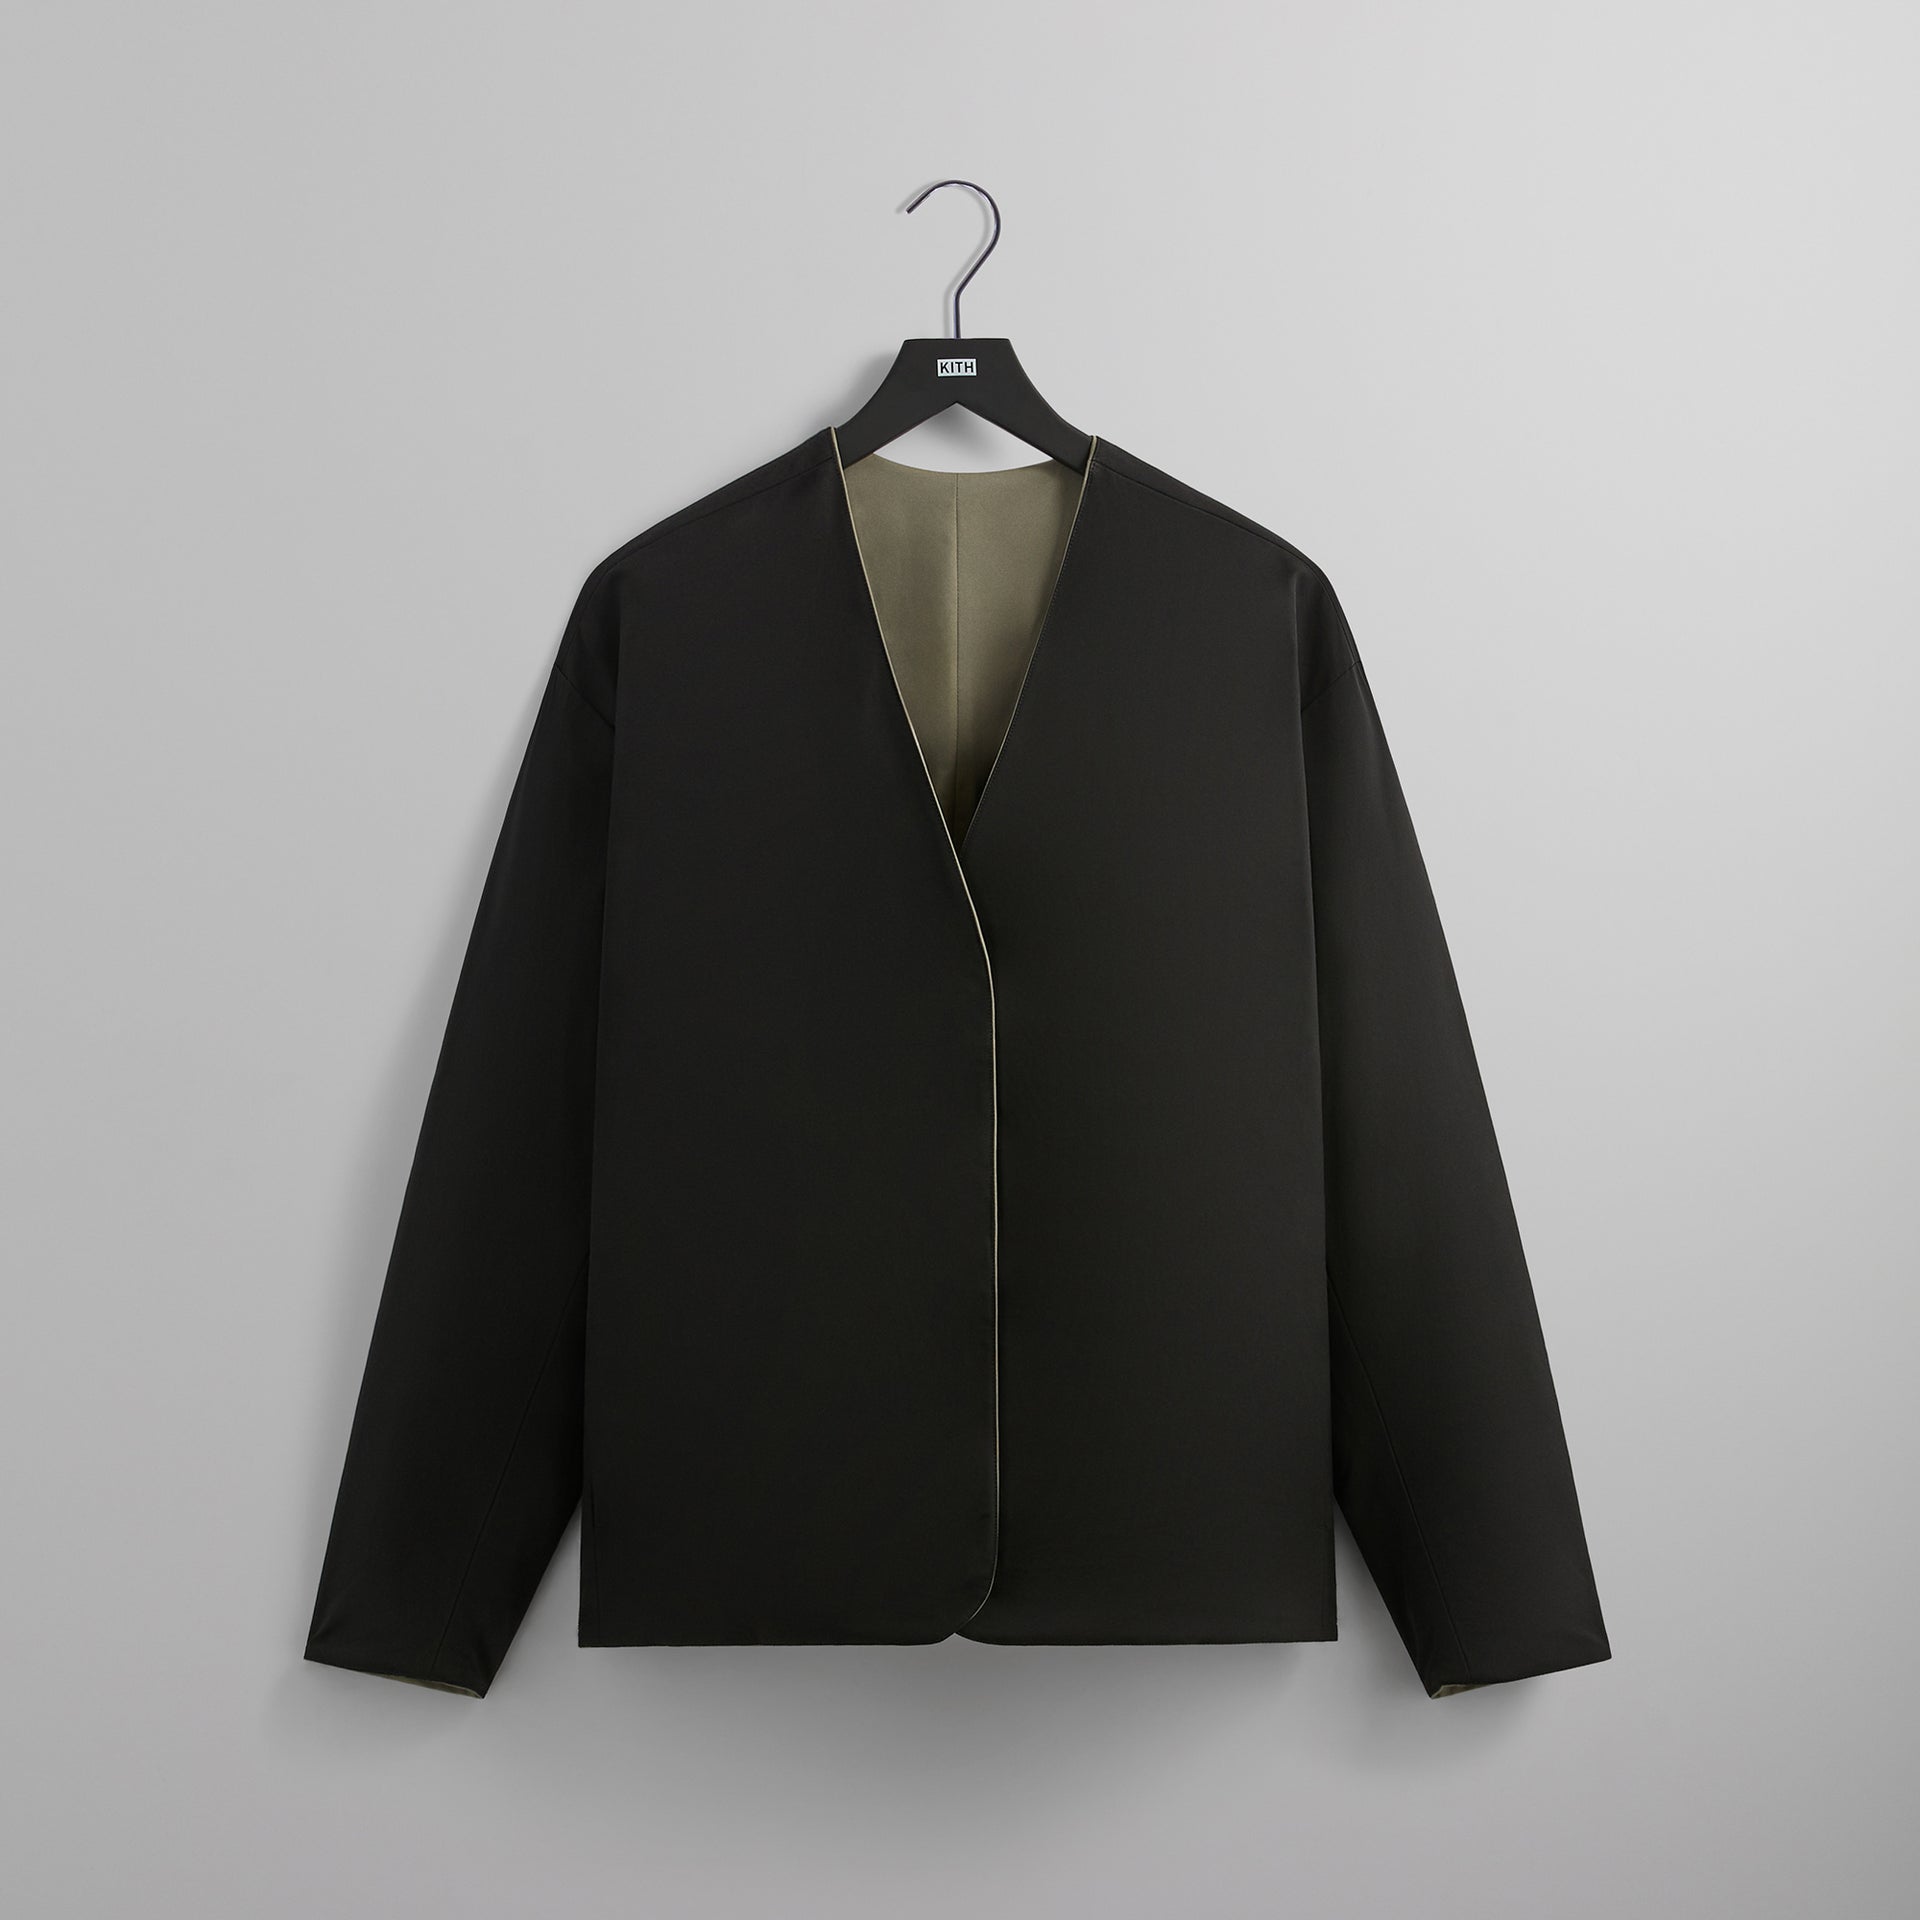 UrlfreezeShops Montague Reversible Jacket - Black